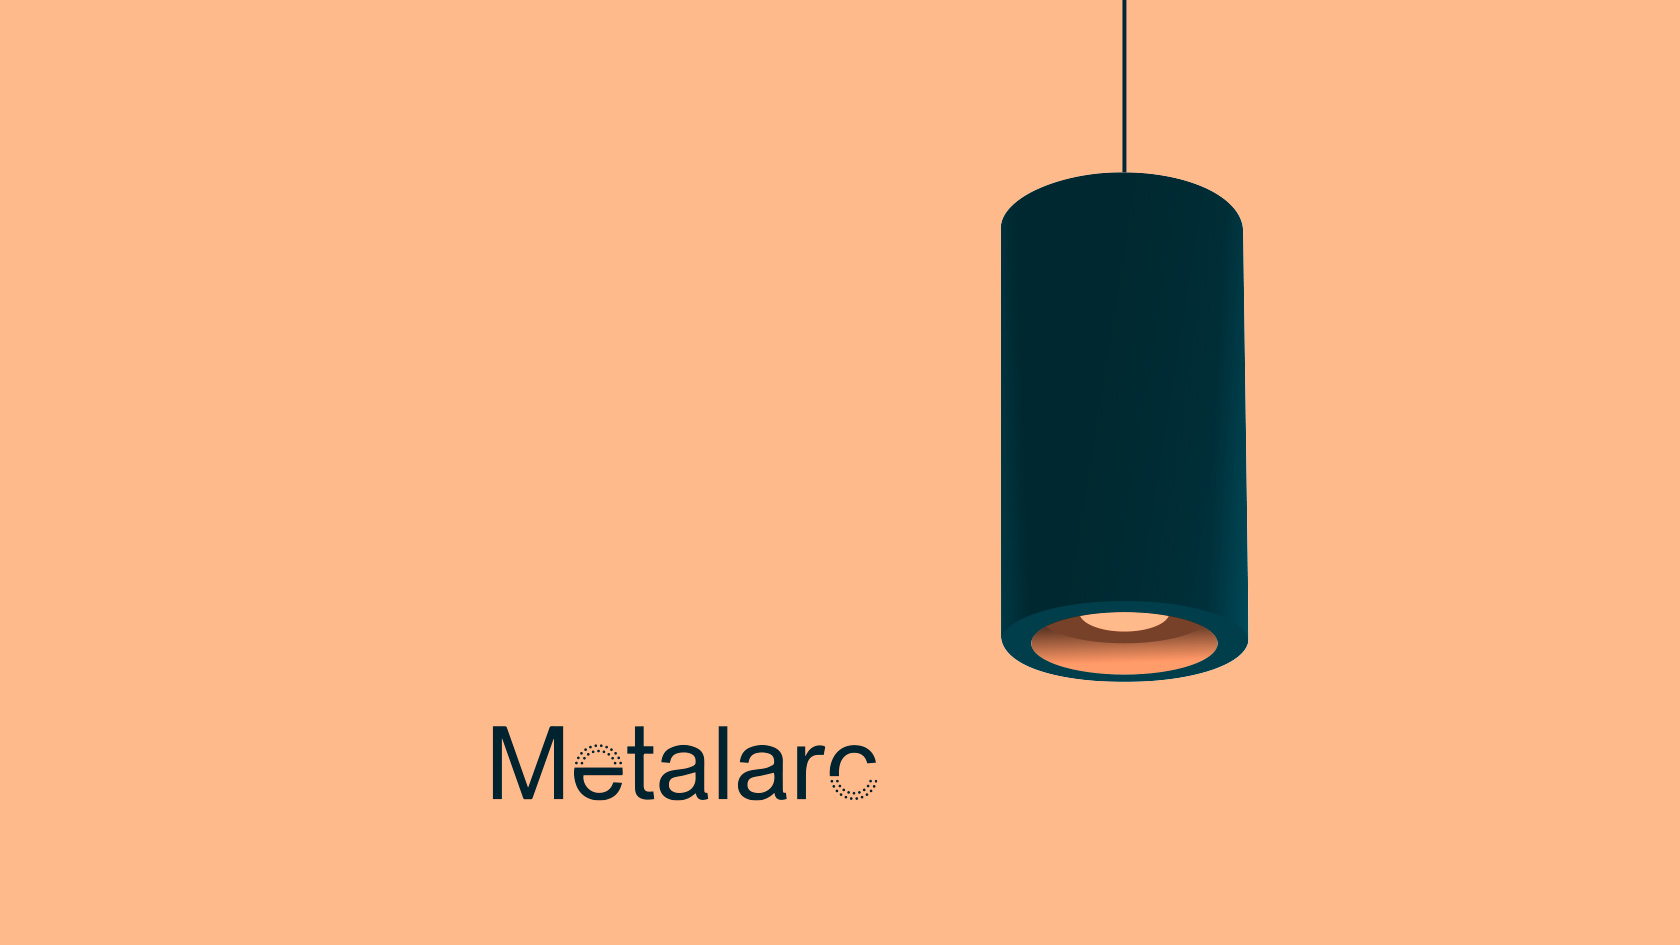 Imagen corporativa Metalarc - Identidad corporativa para empresa de iluminación - Estudio de diseño Valencia Pixelarte